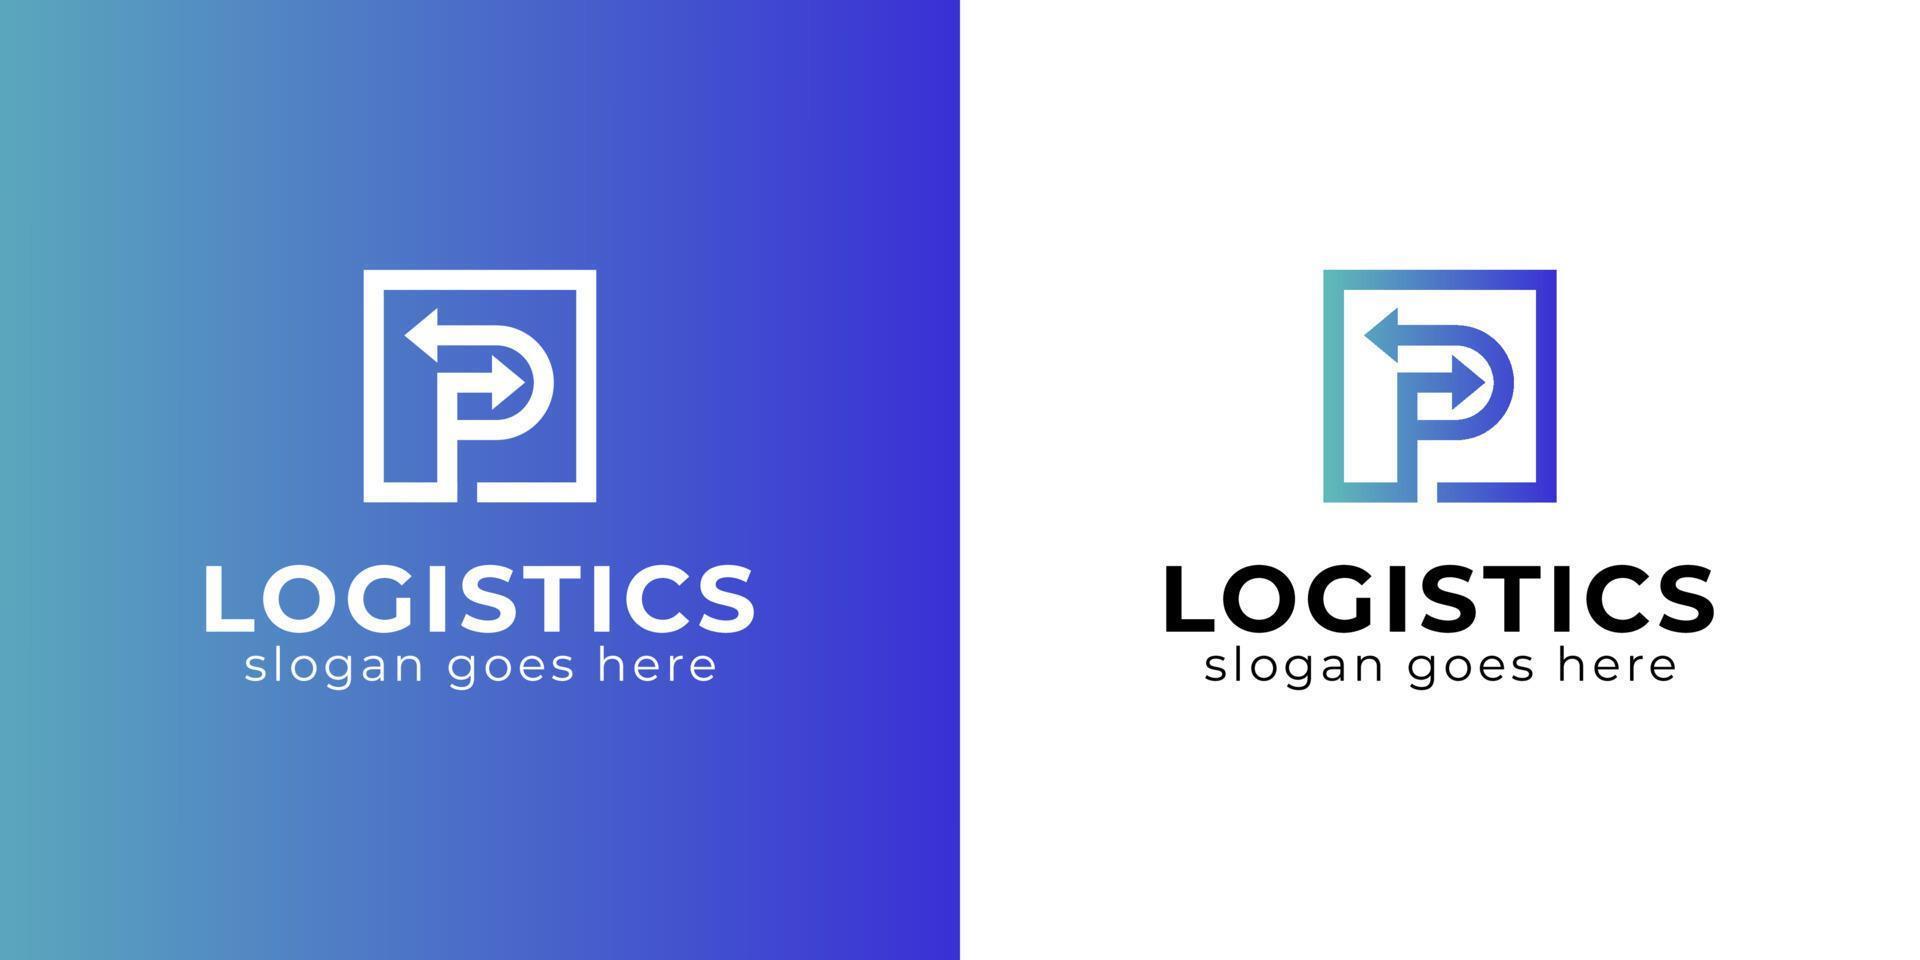 eenvoudig logo-ontwerp van letter p met pijllogo voor uw bedrijf. snelle levering logo. transport logistiek logo sjabloon vector